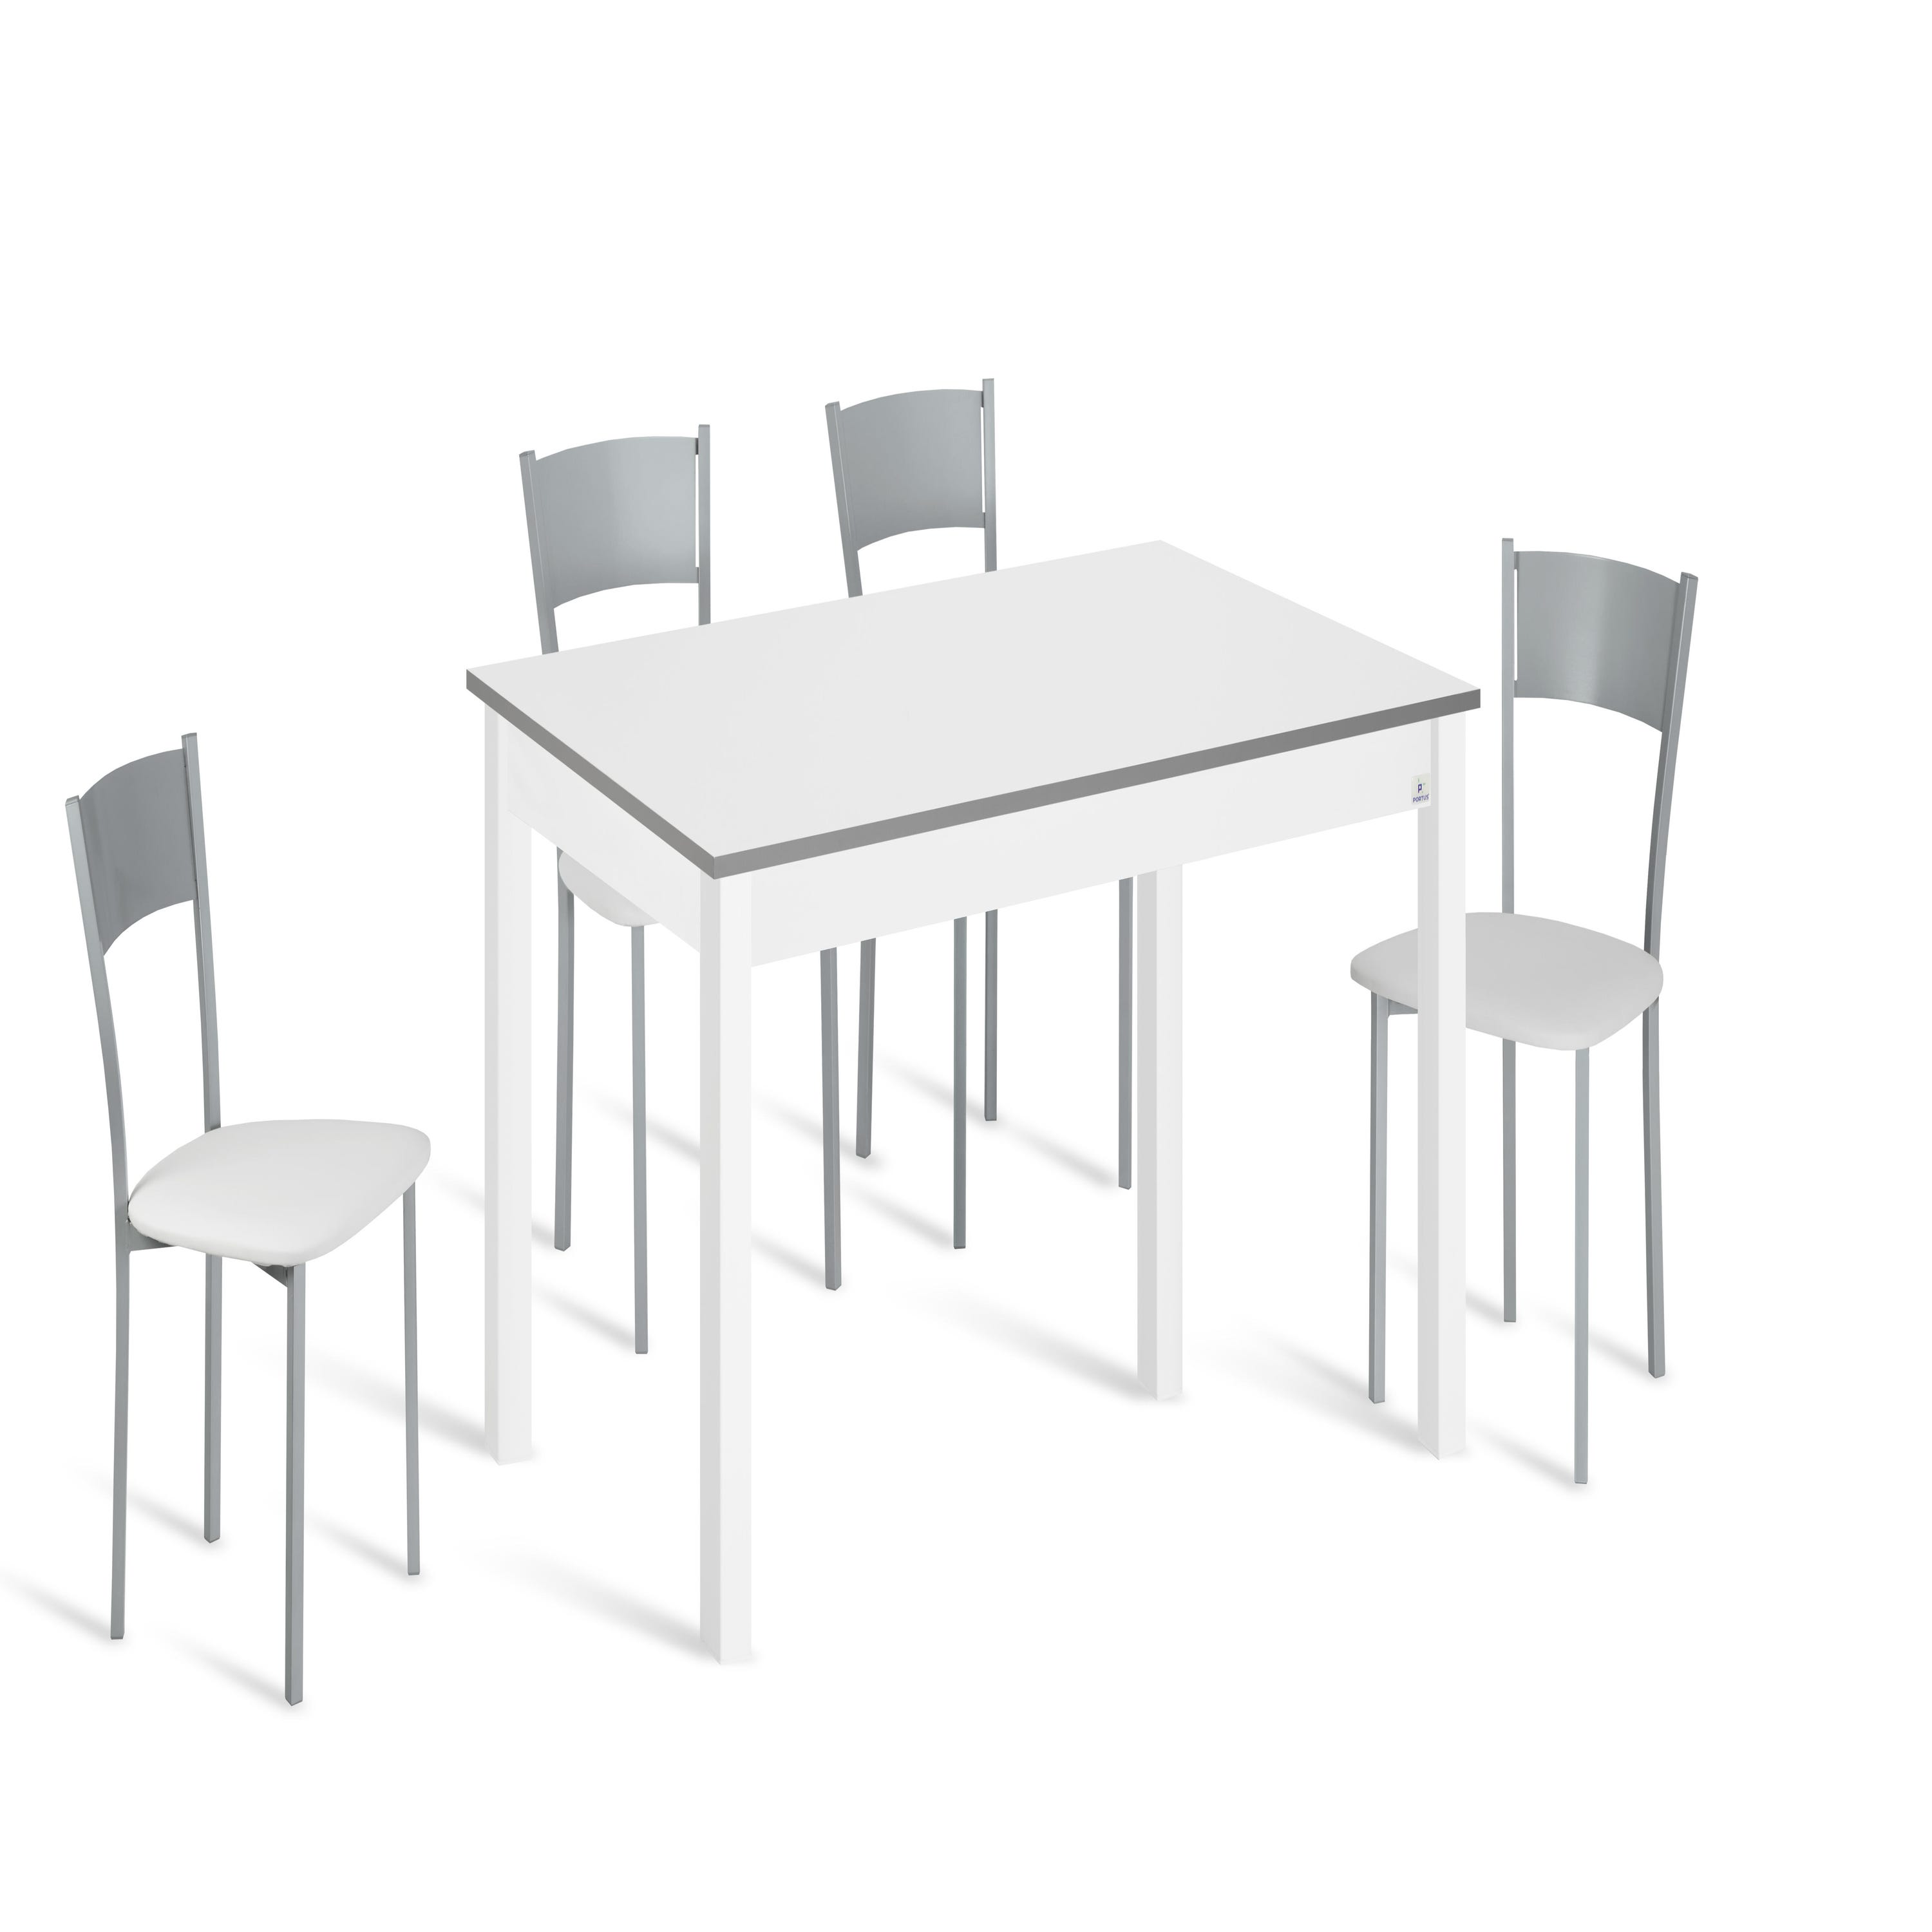 Conjunto mesa Alba 110x70 cm extensible con 4 asientos